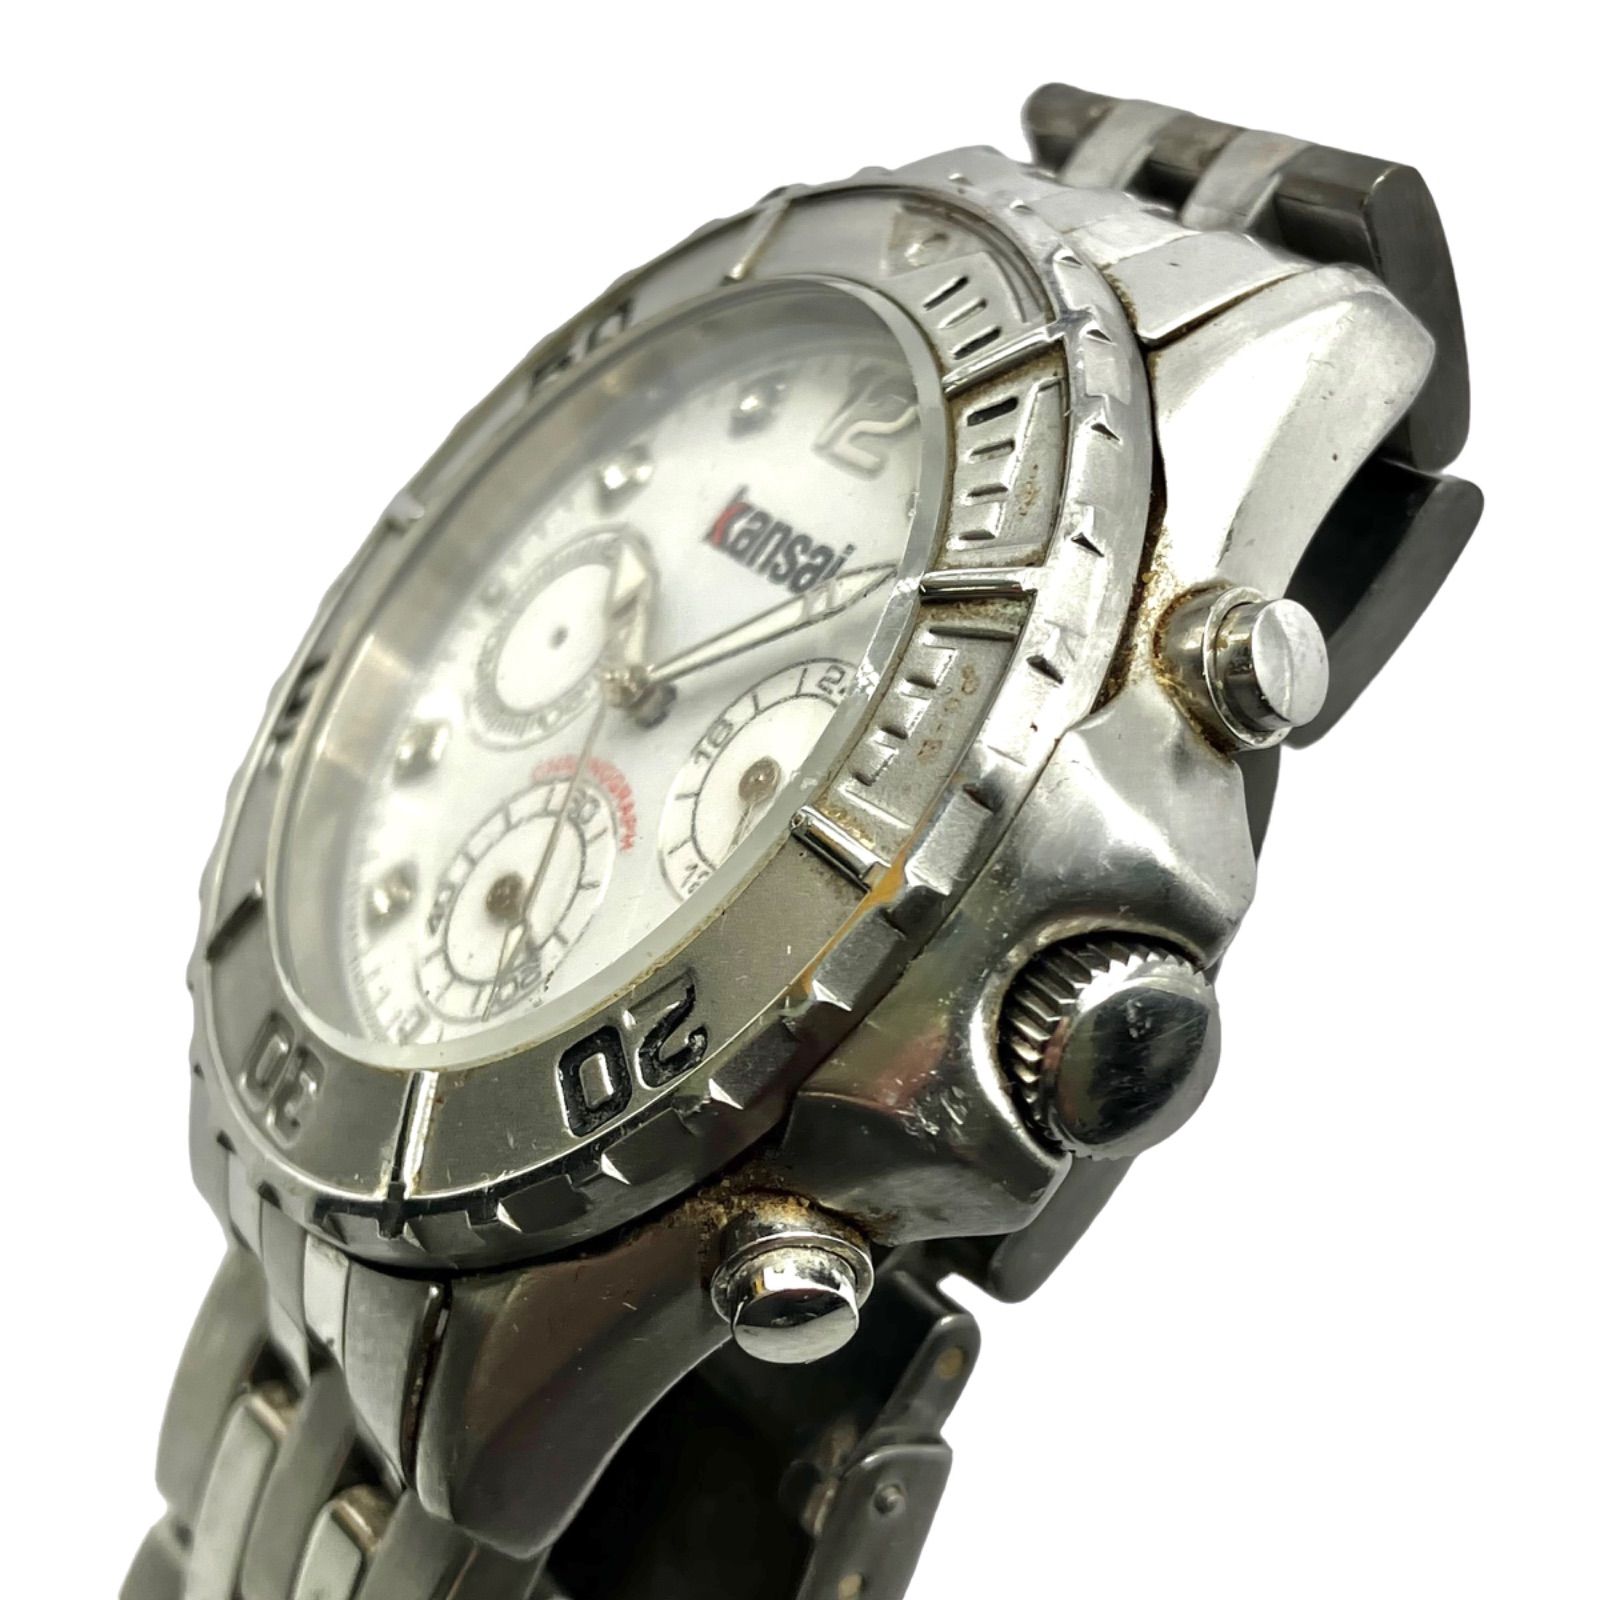 【訳ありジャンク品 KANSAI カンサイ】電池新品交換 クロノグラフ kansaiyamamoto クォーツ メンズ腕時計 КT -0881